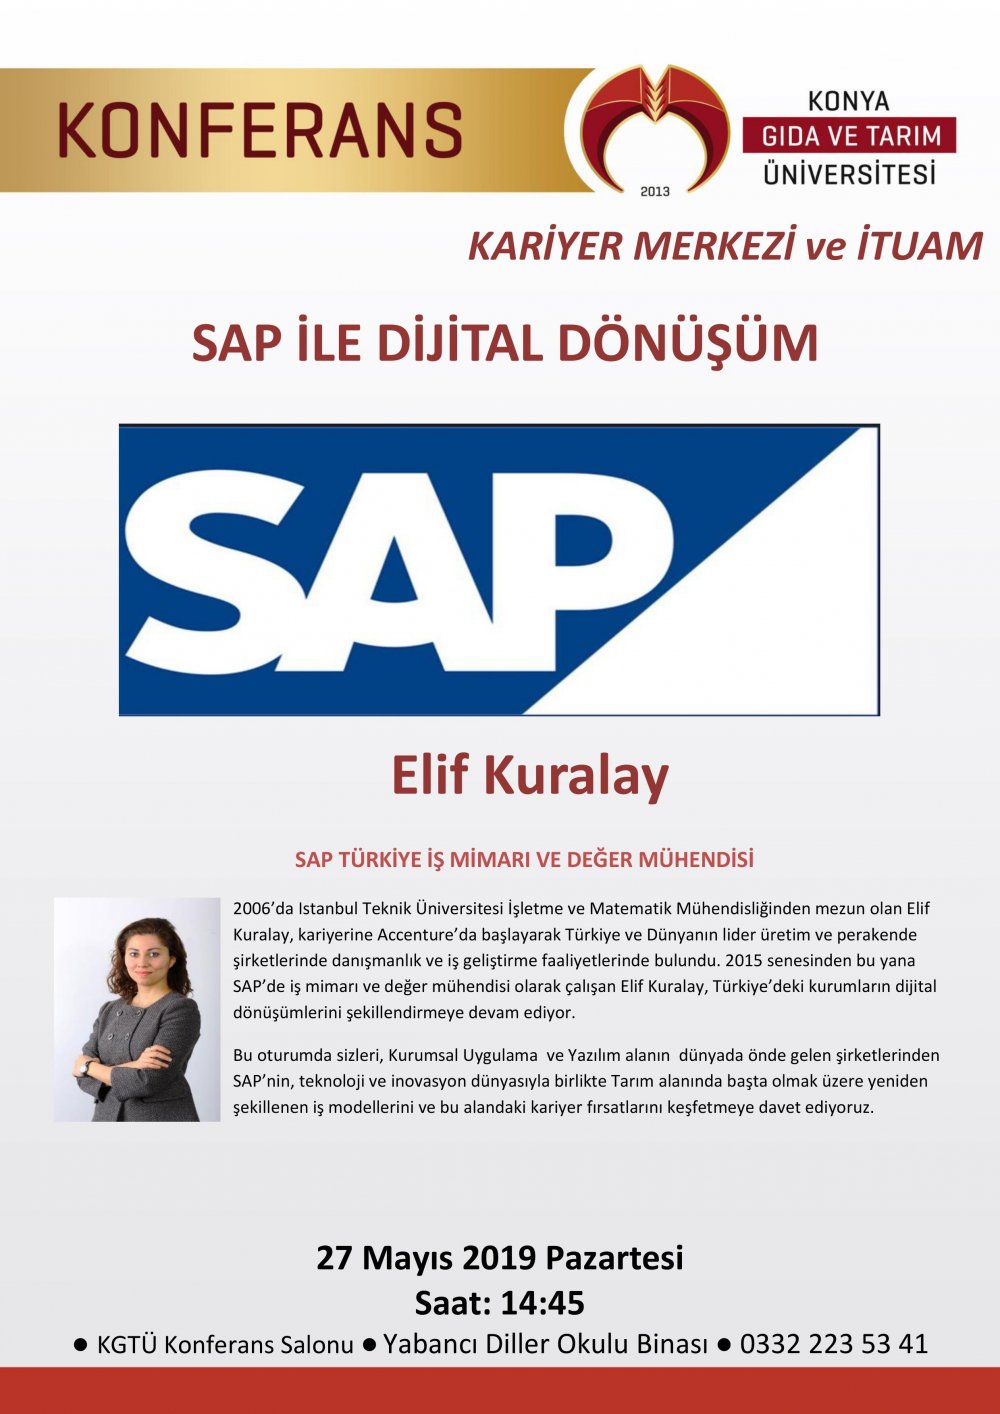 Konferans - SAP ile Dijital Dönüşüm / 27 Mayıs 2019 Pazartesi 14:45